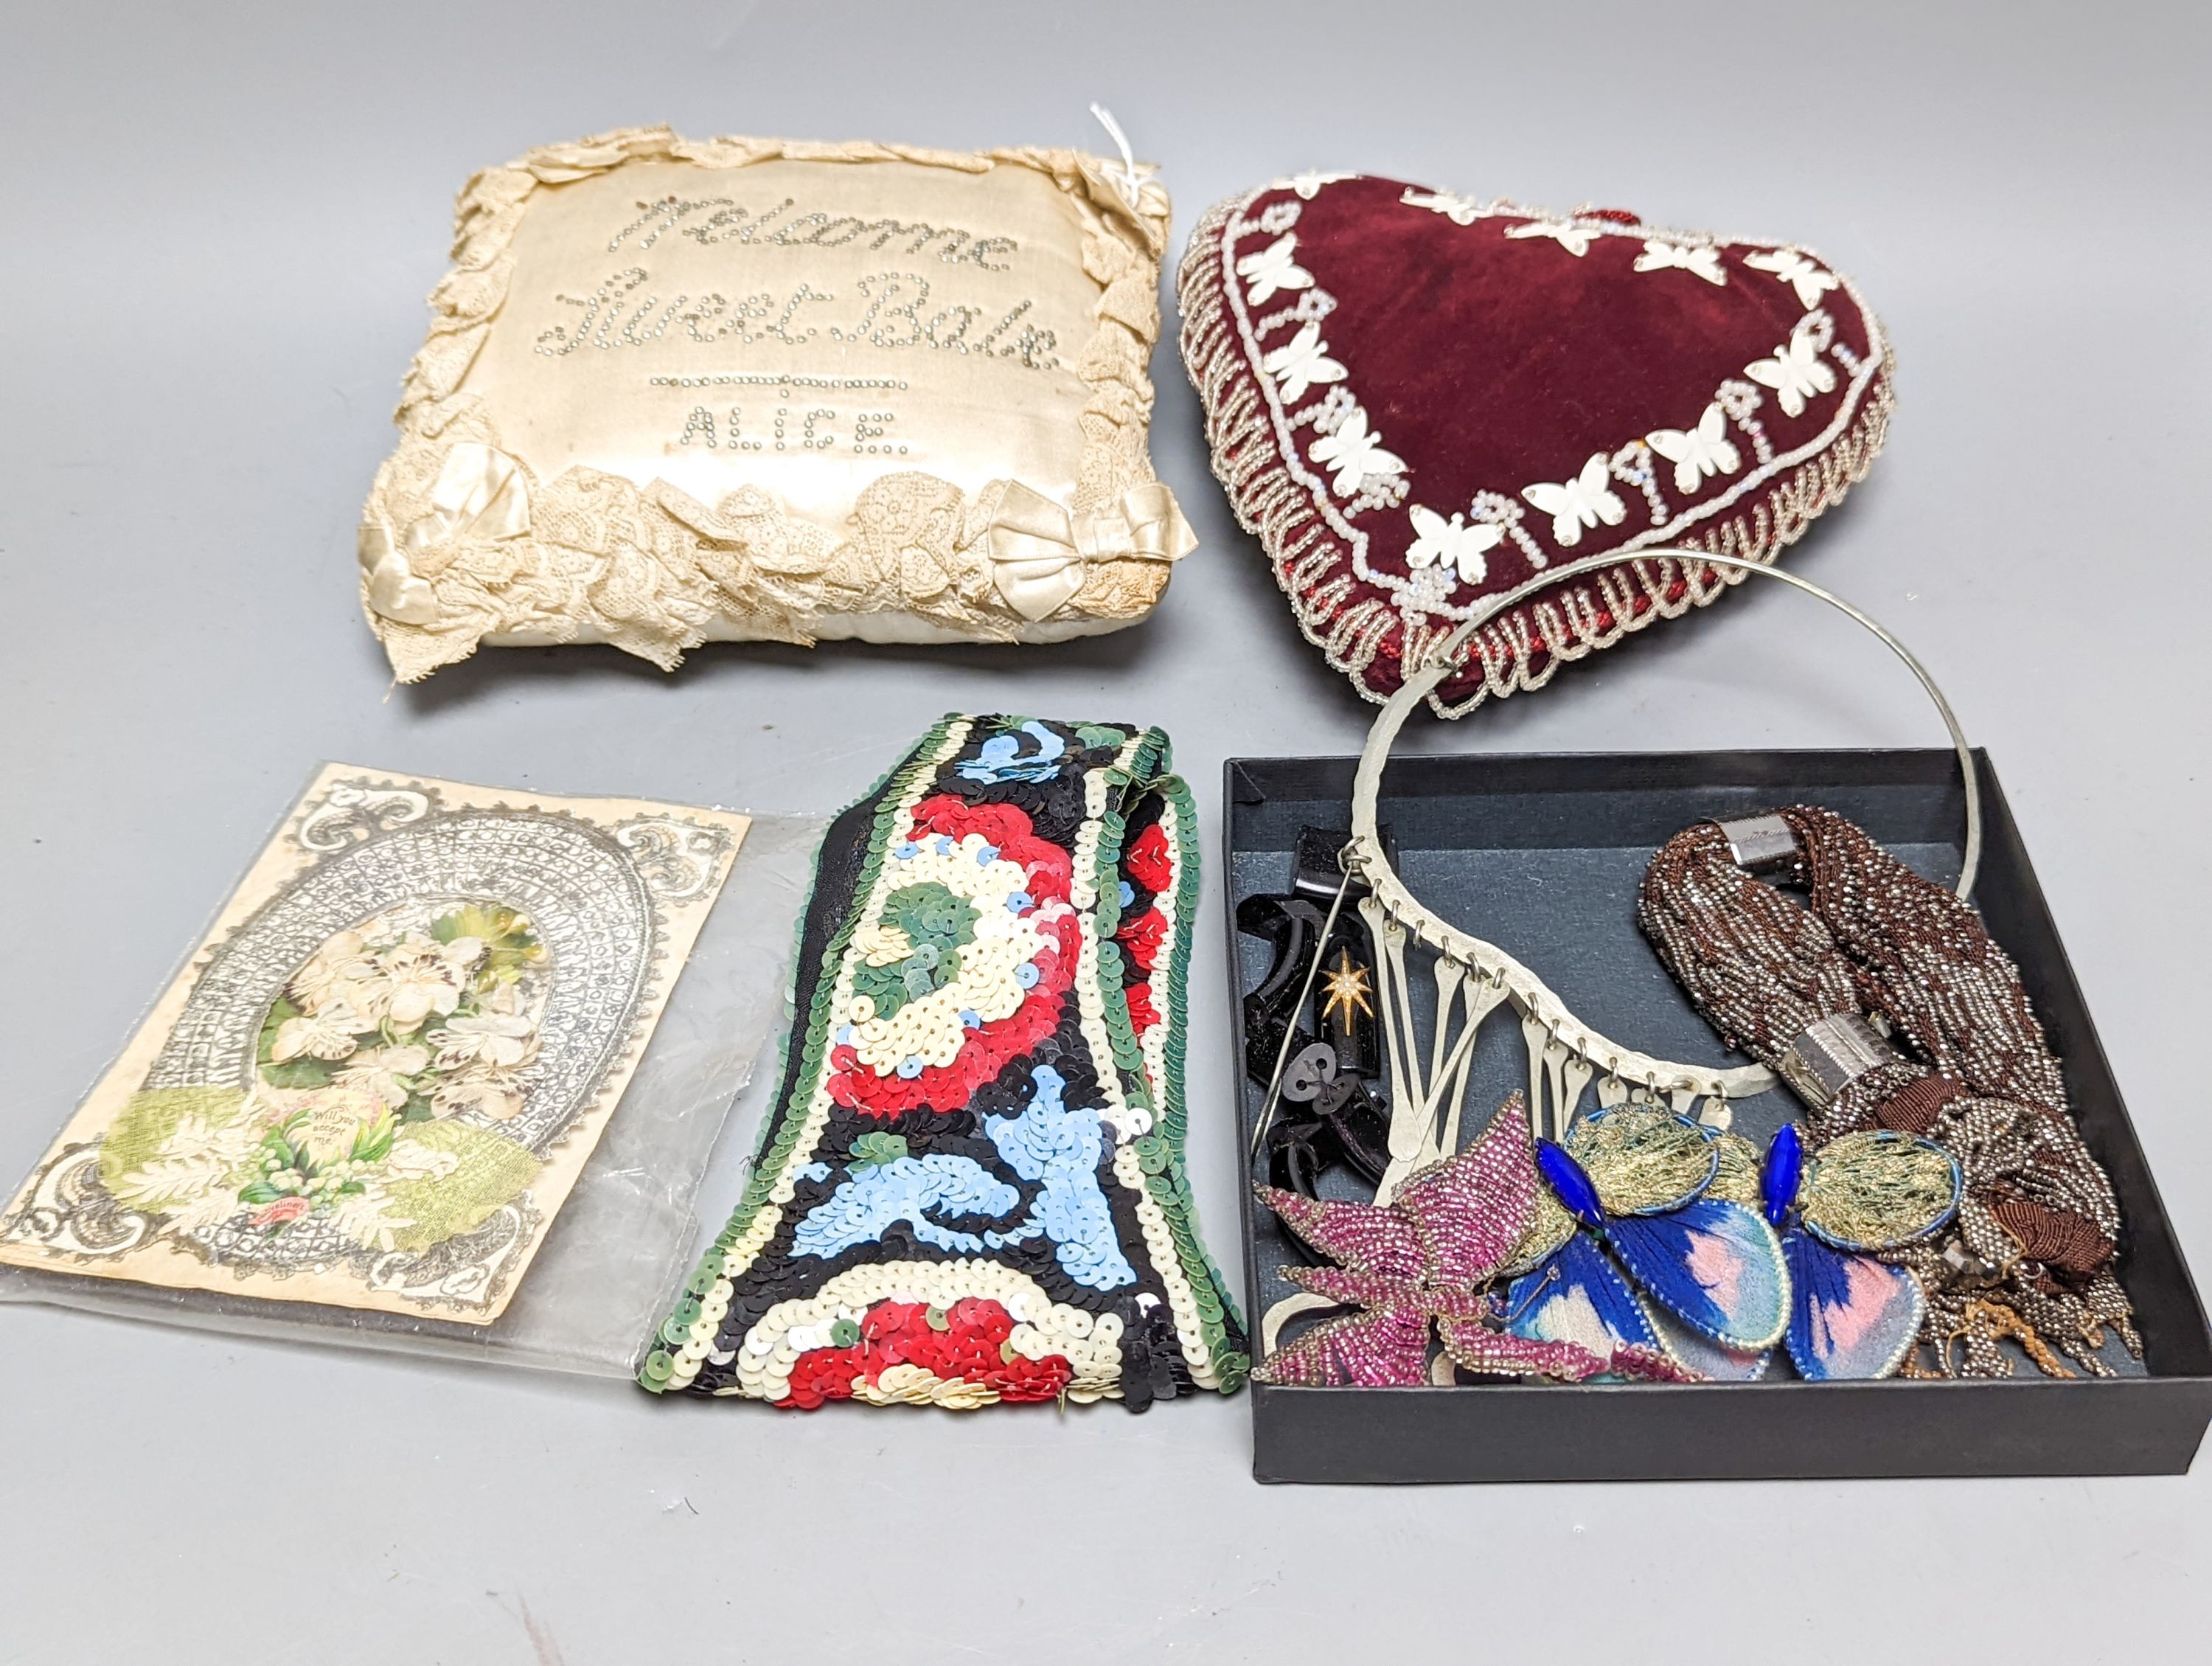 A cream silk pin baby cushion, a valentine cushion, a miser's purse, appliques and sequin collar